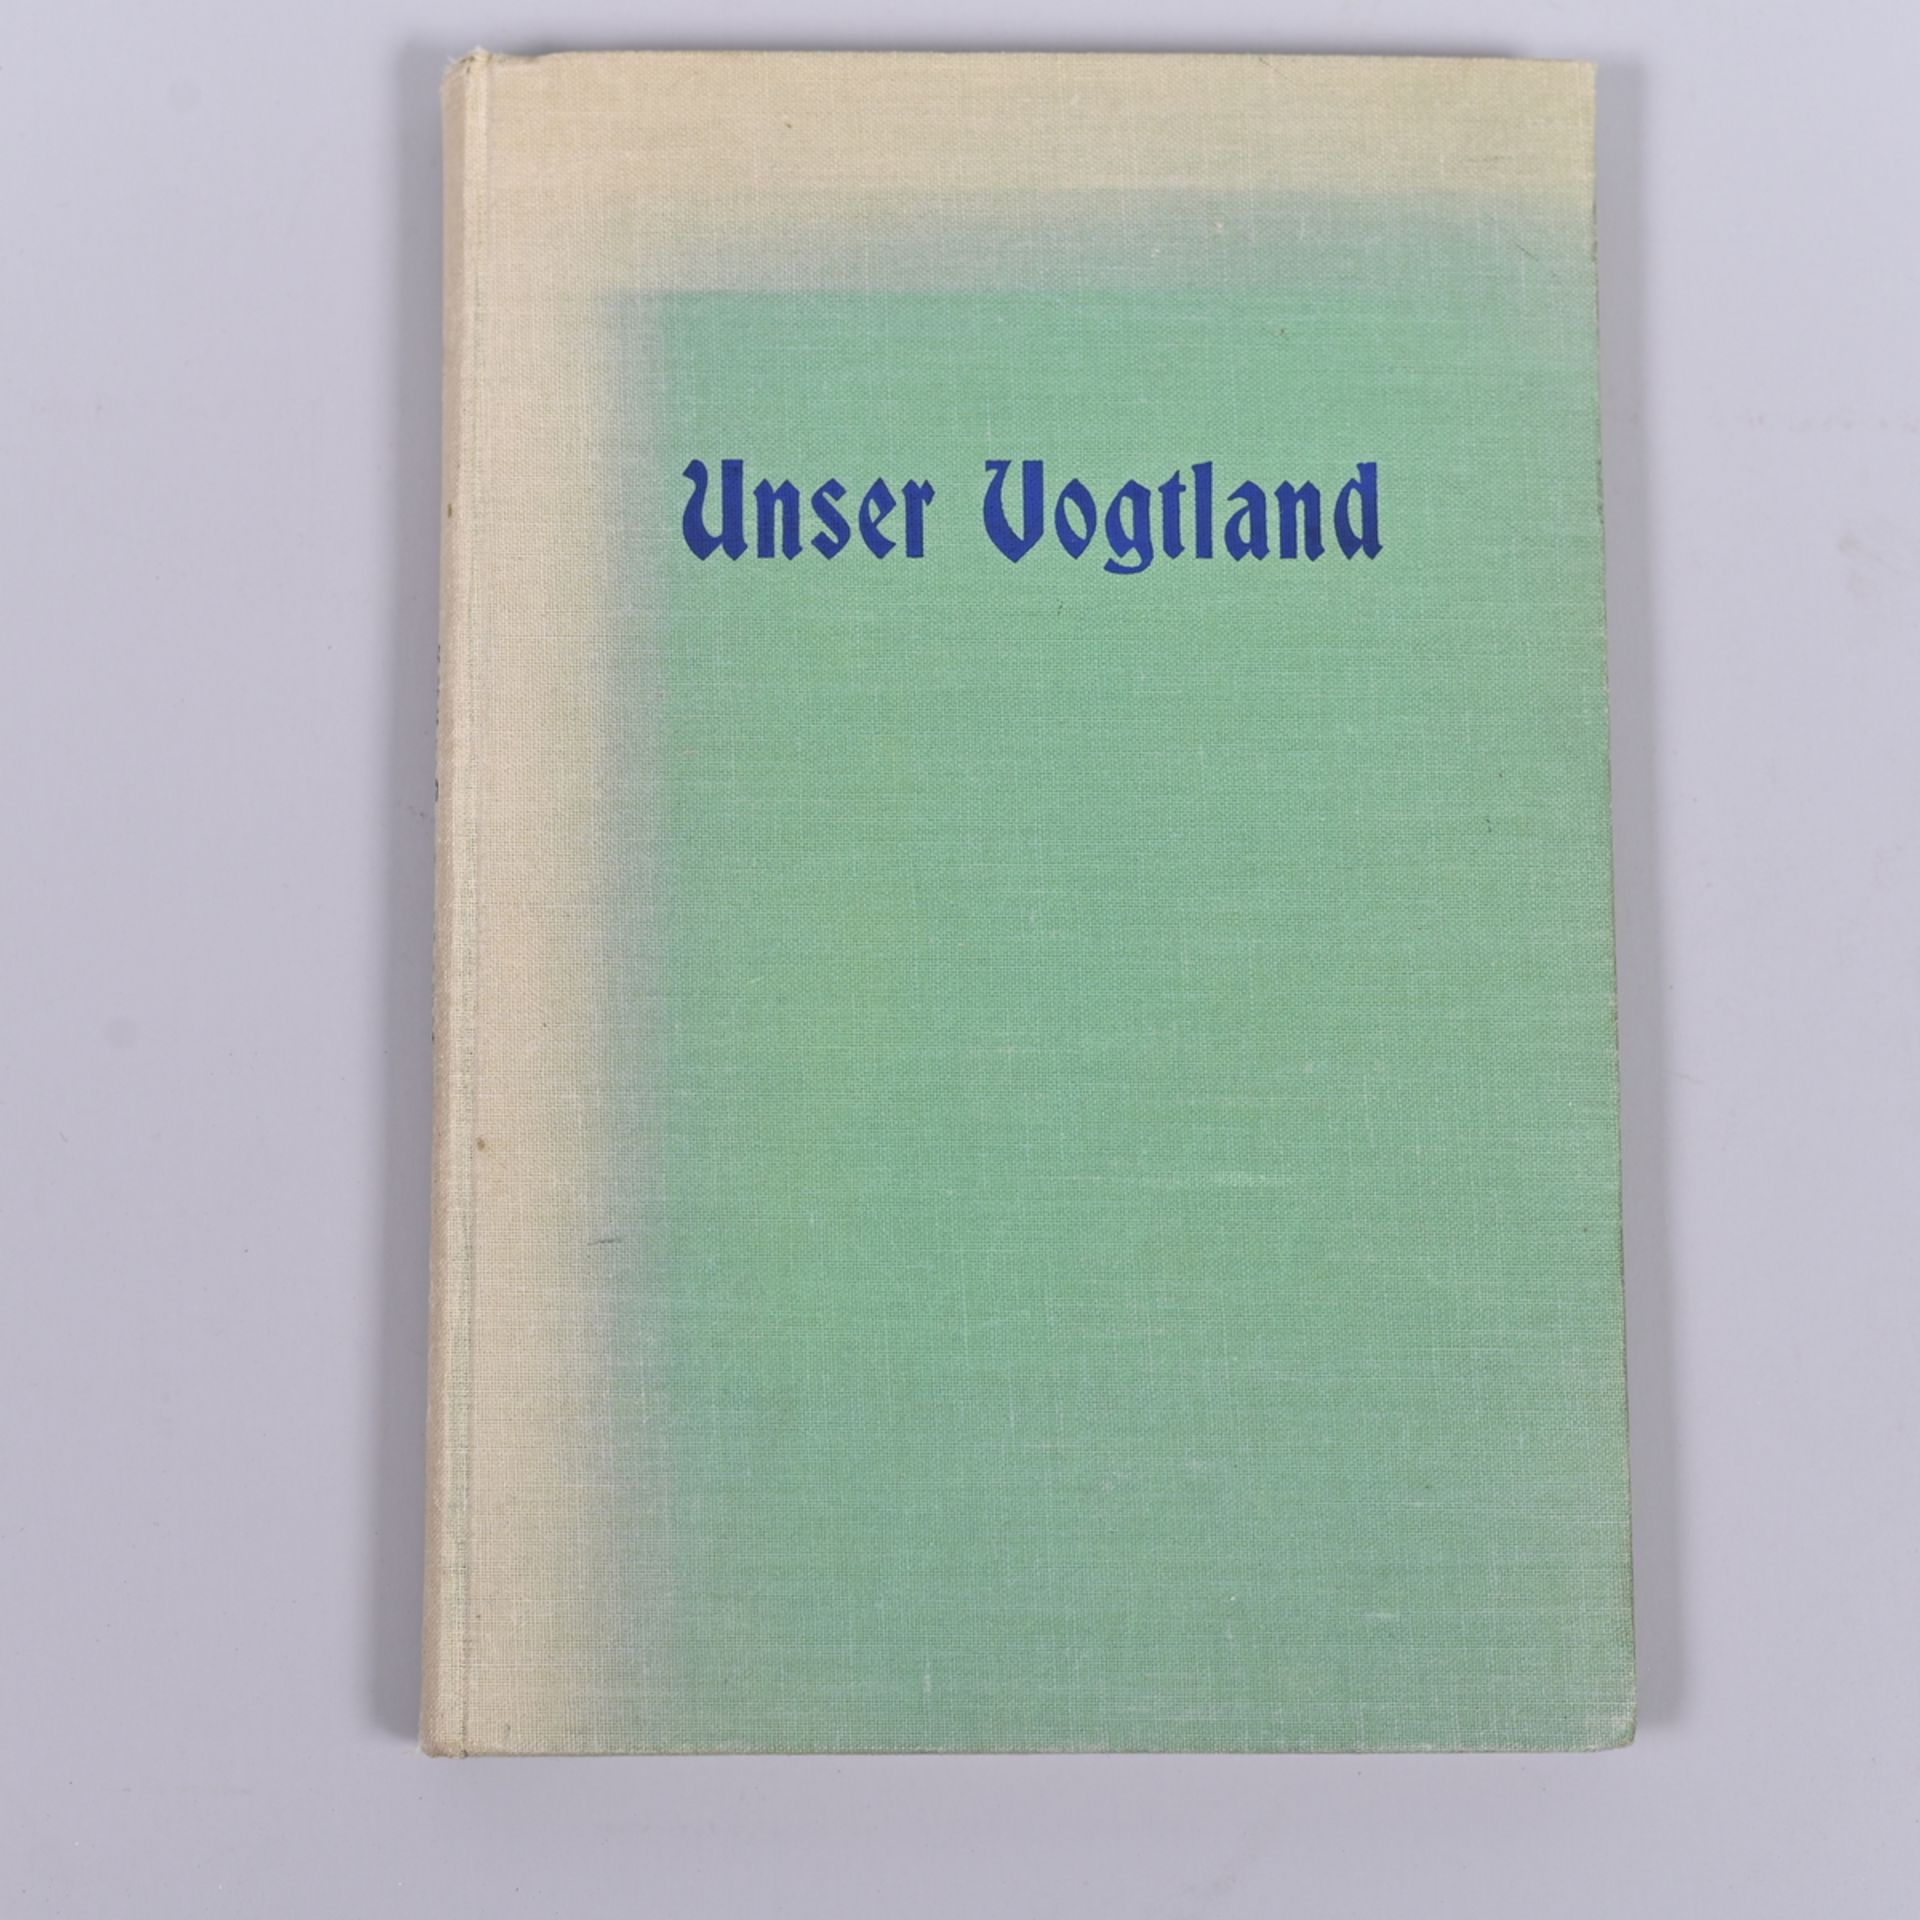 "Unser Vogtland", heimatkundliche Lesestücke, Verlag der Dürr´schen Buchhandlung 1929, bearbeitet